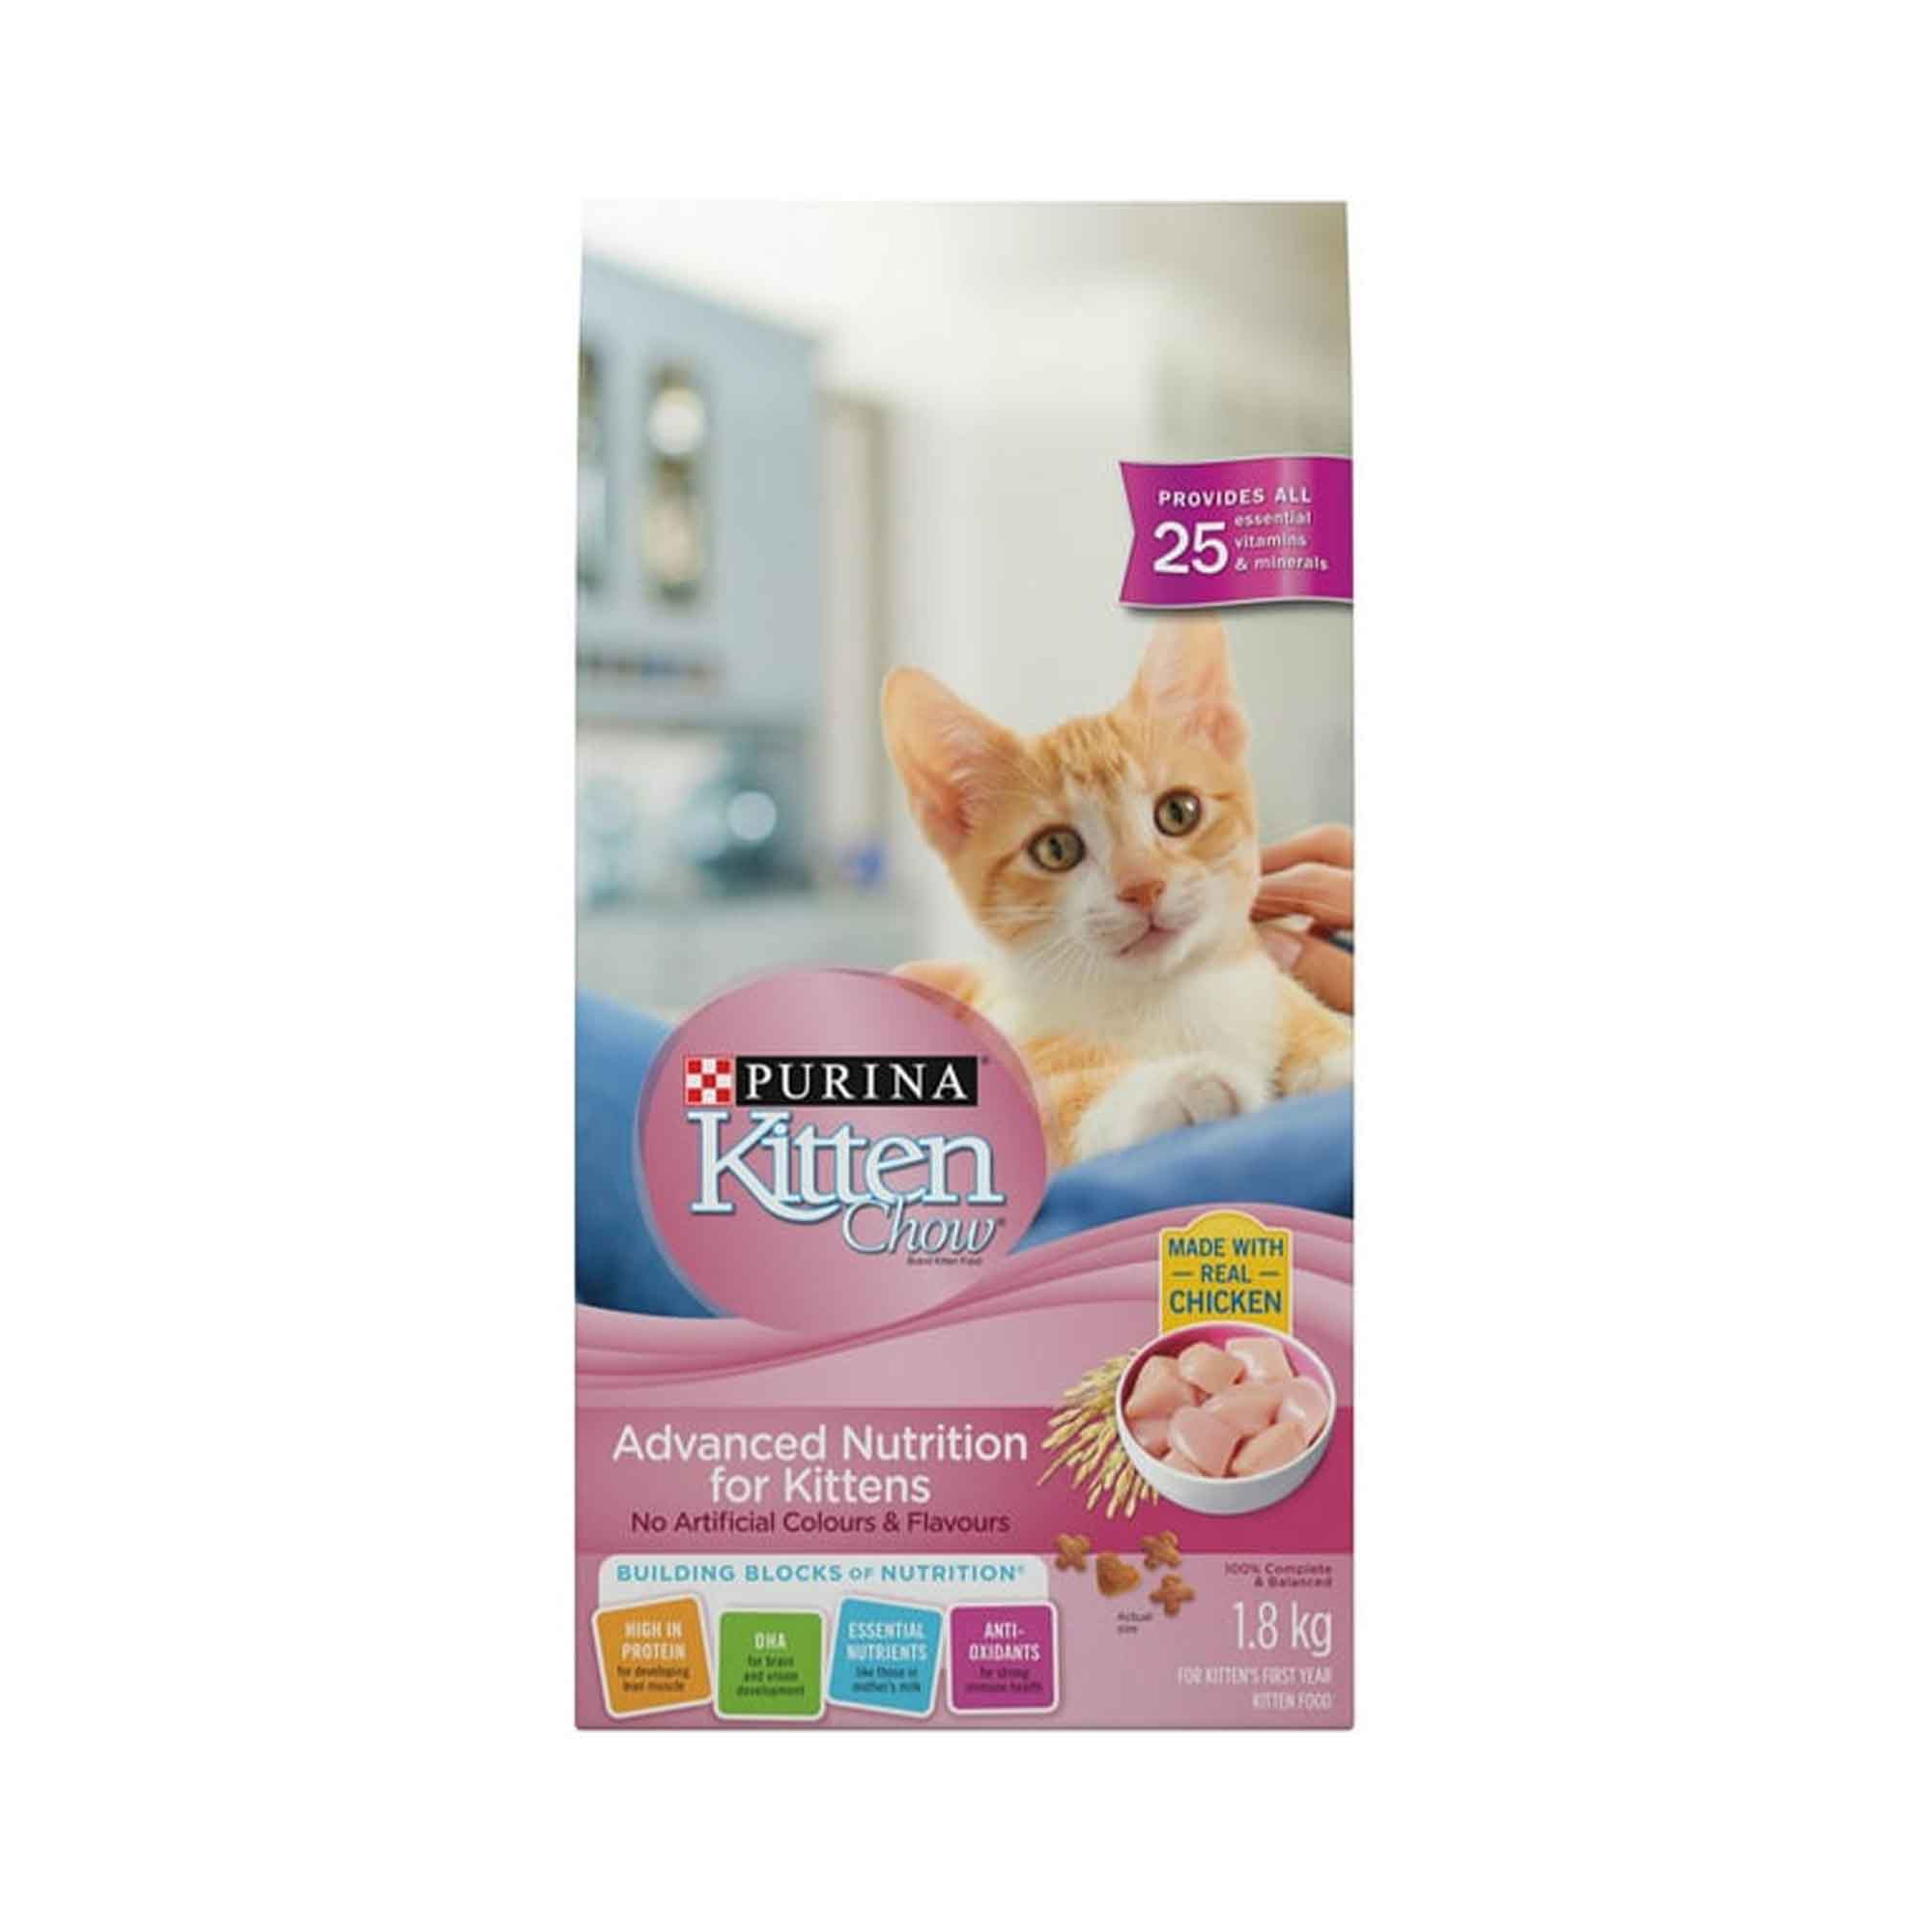 Purina Kitten Chow Advanced Nutrition pour chatons, nourriture sèche pour chatons - formule au poulet